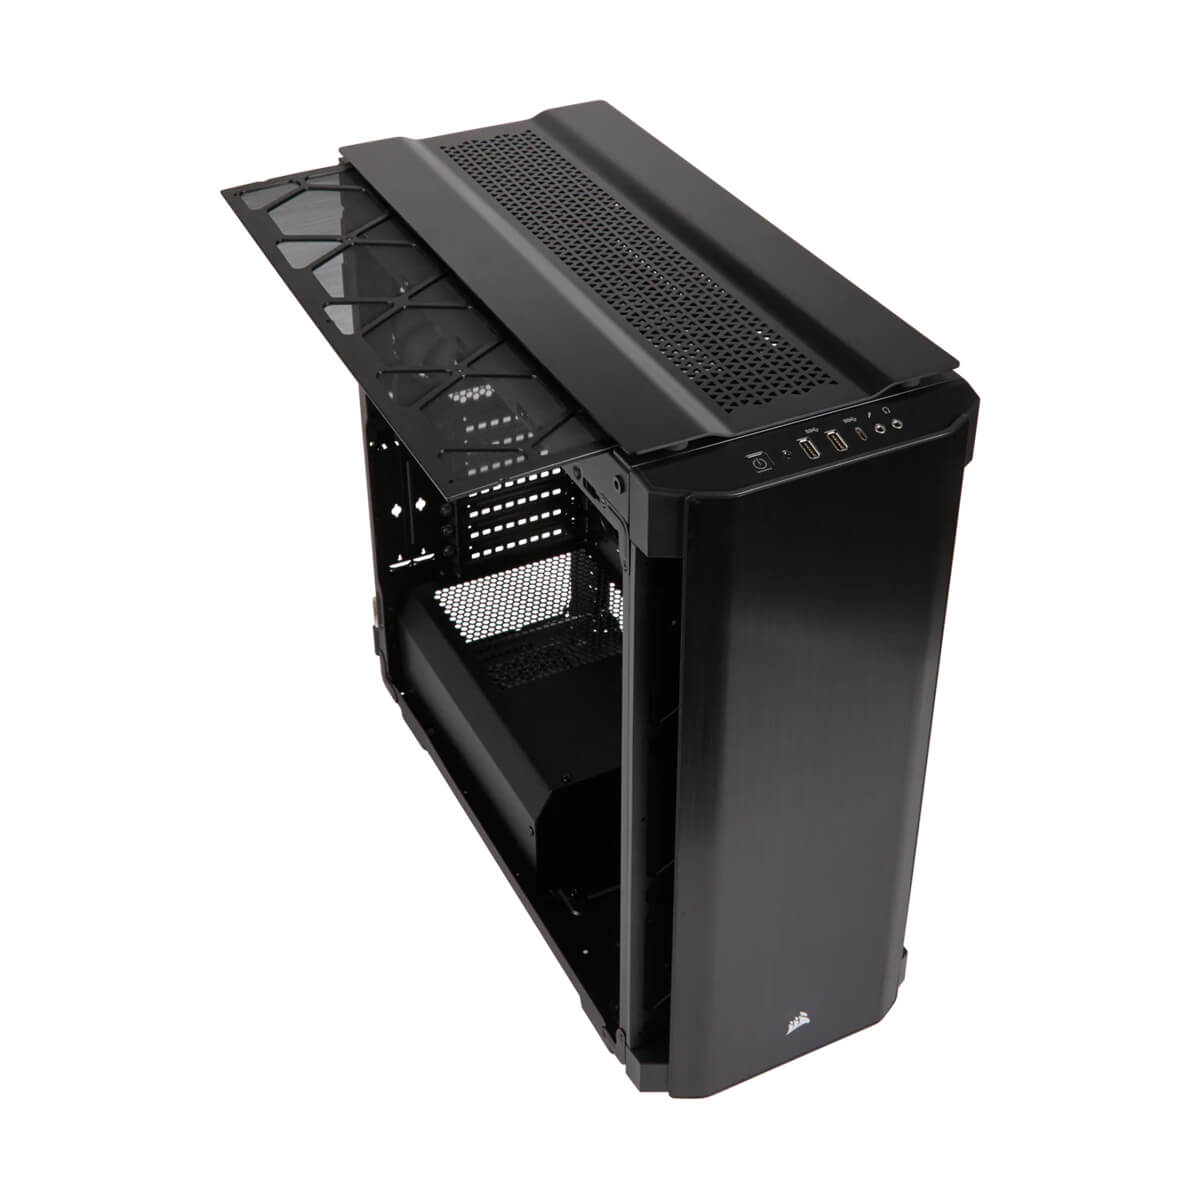 GABINETE CORSAIR OBSIDIAN 500D BLACK ATX USB 3.0 S/FTE CC-9011116-WW - CC-9011116-WW